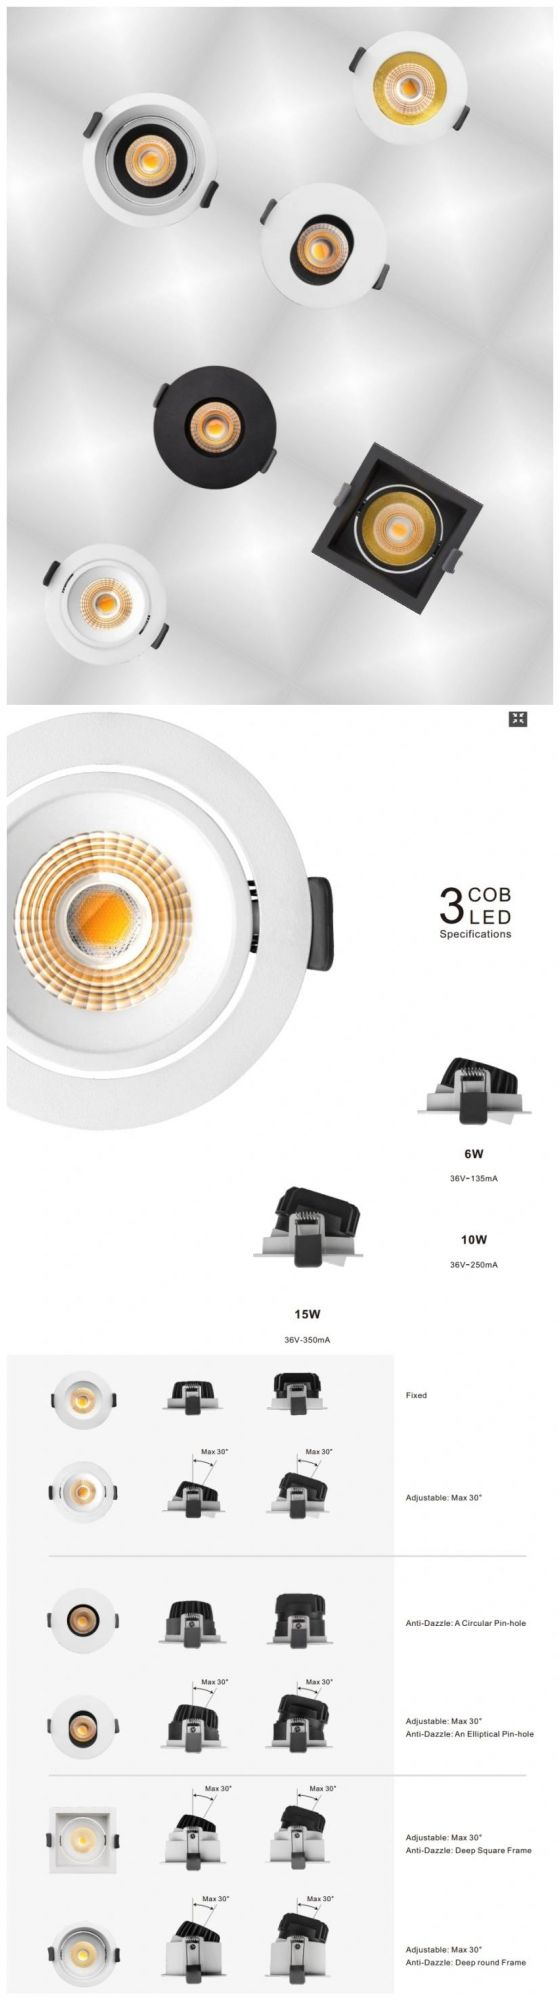 R6914 New Design Popular Ceiling Light LED Down Light